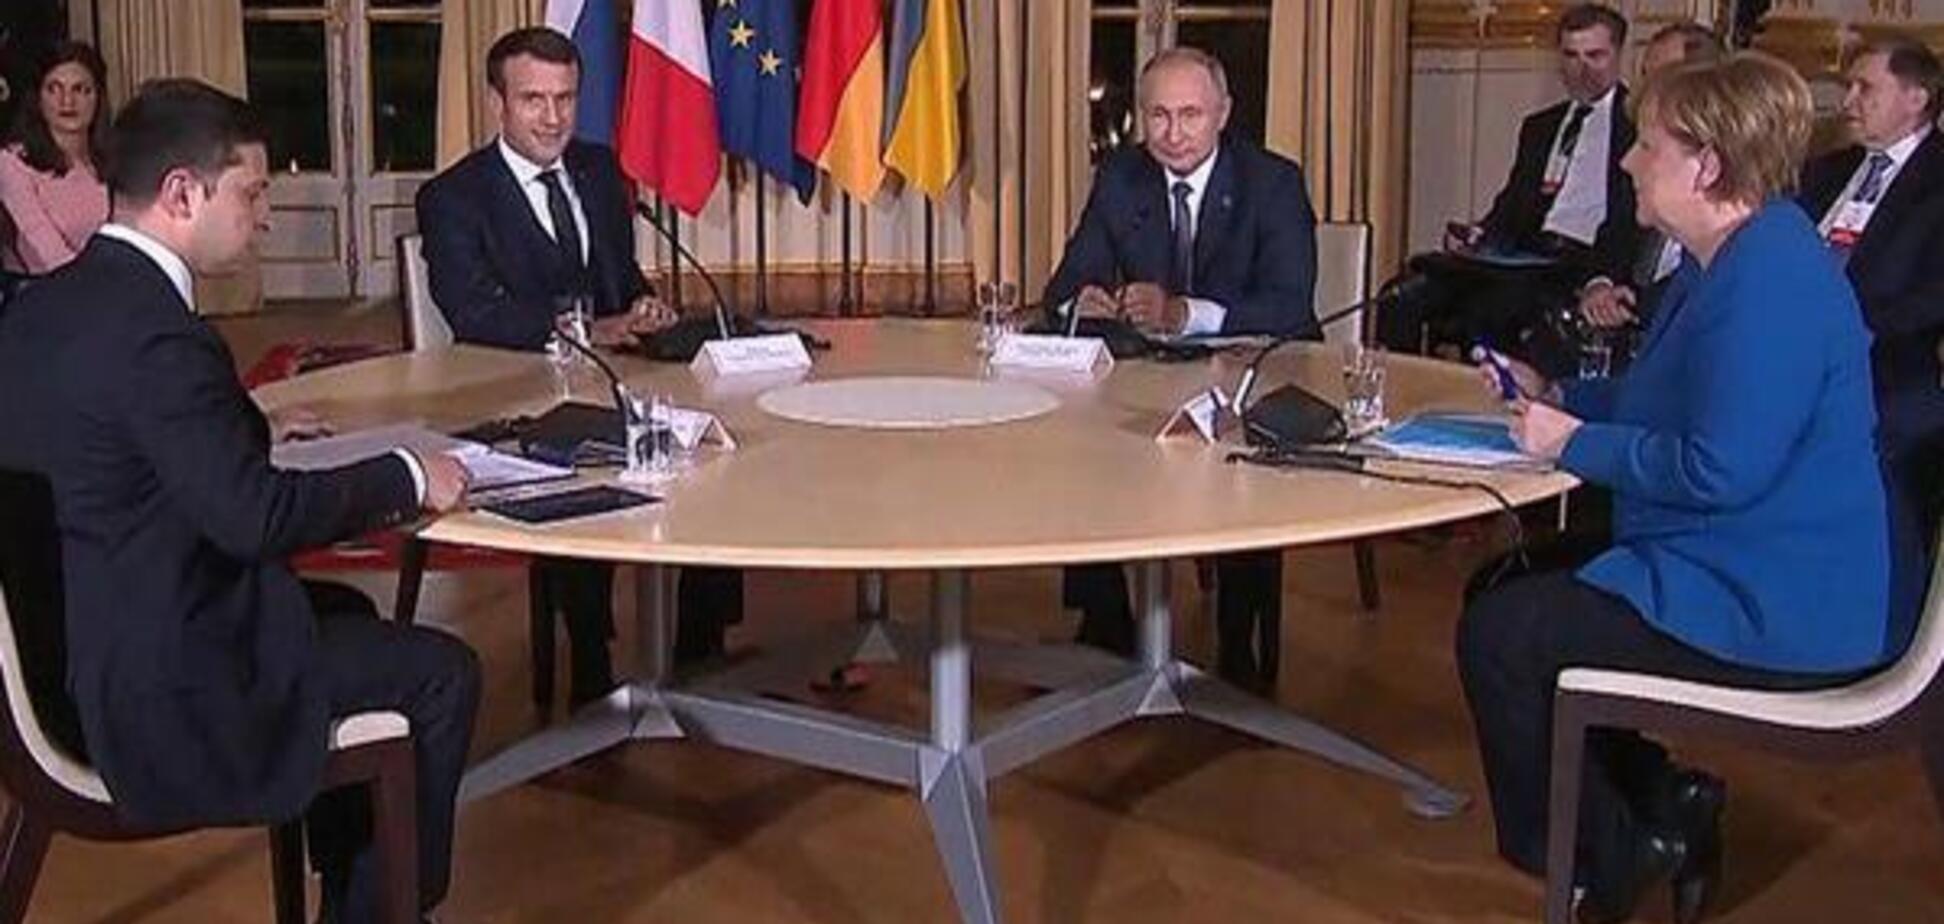 Жоден документ не підписали: з'явилися тривожні дані про підсумки саміту в Парижі